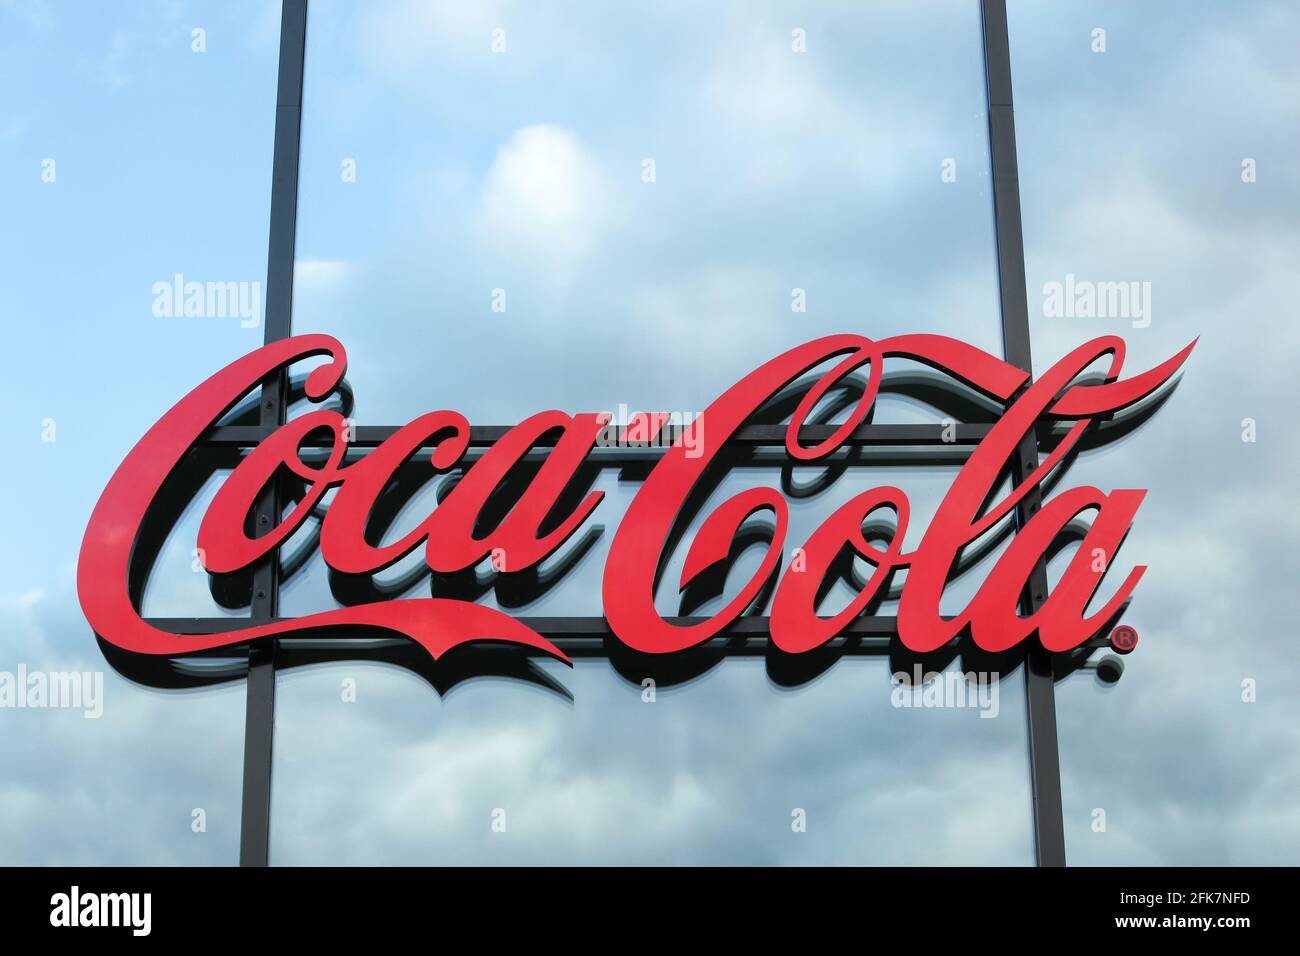 Berlin, Allemagne - 11 juillet 2020 : logo Coca cola sur un mur. Coca-Cola est une boisson gazeuse Banque D'Images